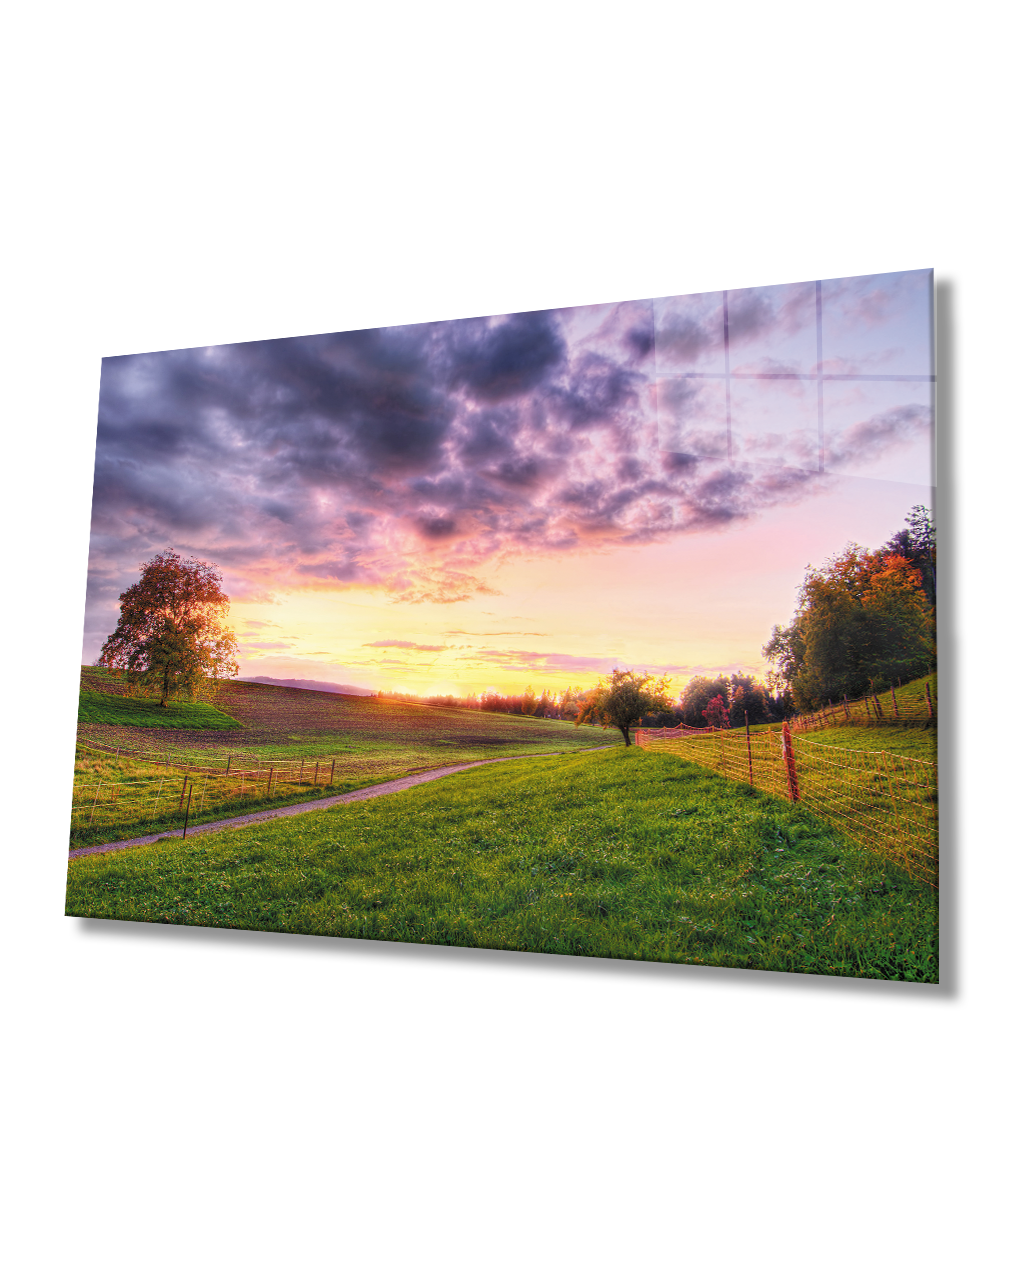 Gün Batımı Manzara  Cam Tablo  4mm Dayanıklı Temperli Cam Sunset Landscape Glass Table 4mm Durable Tempered Glass